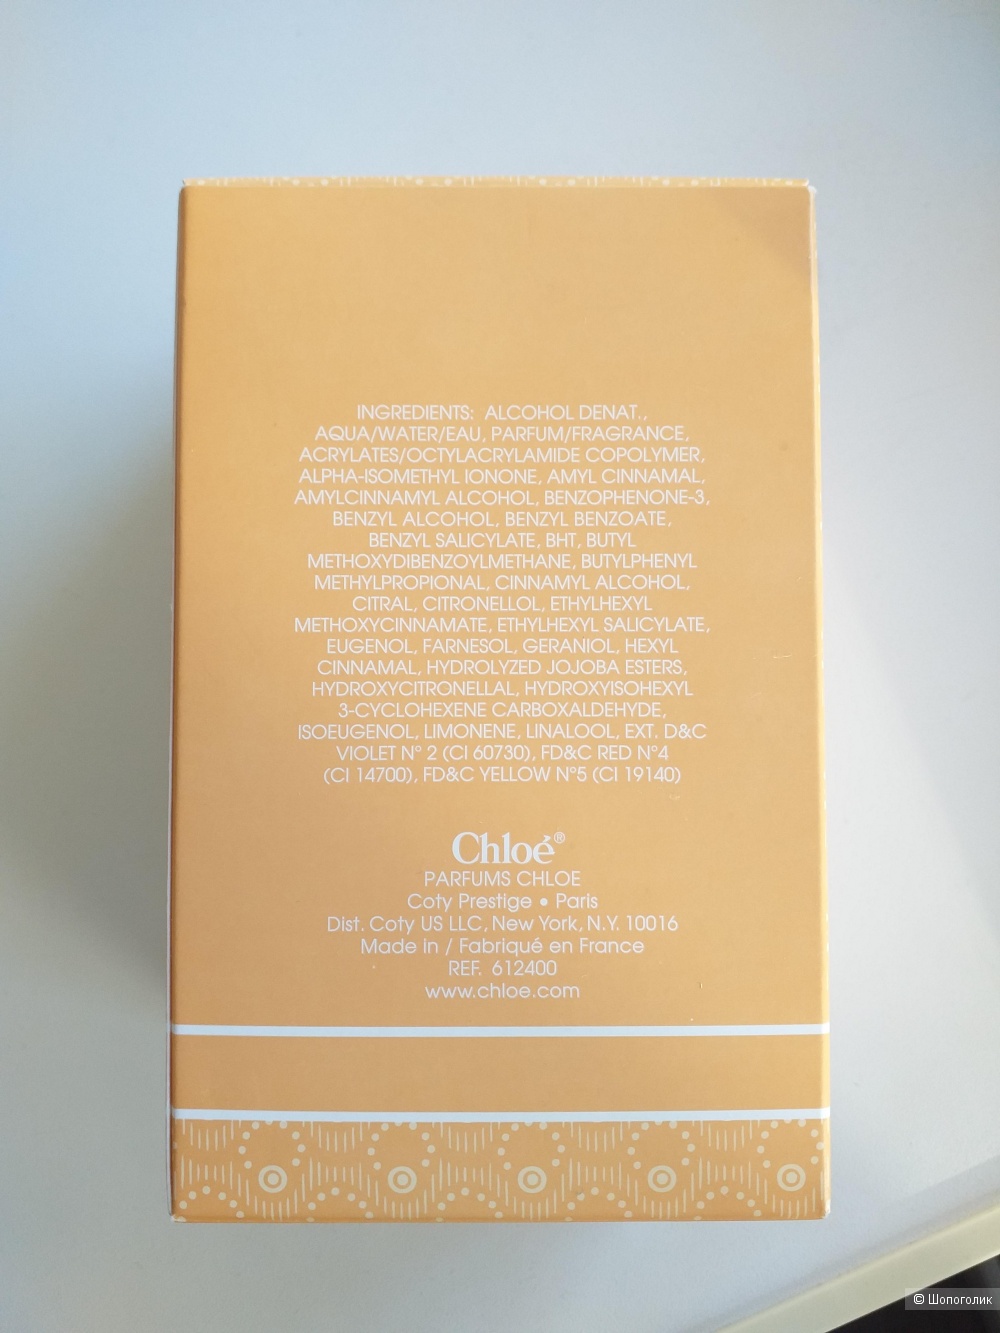 Chloé (Parfums Chloé) Chloé, edt 70 из 90 ml.